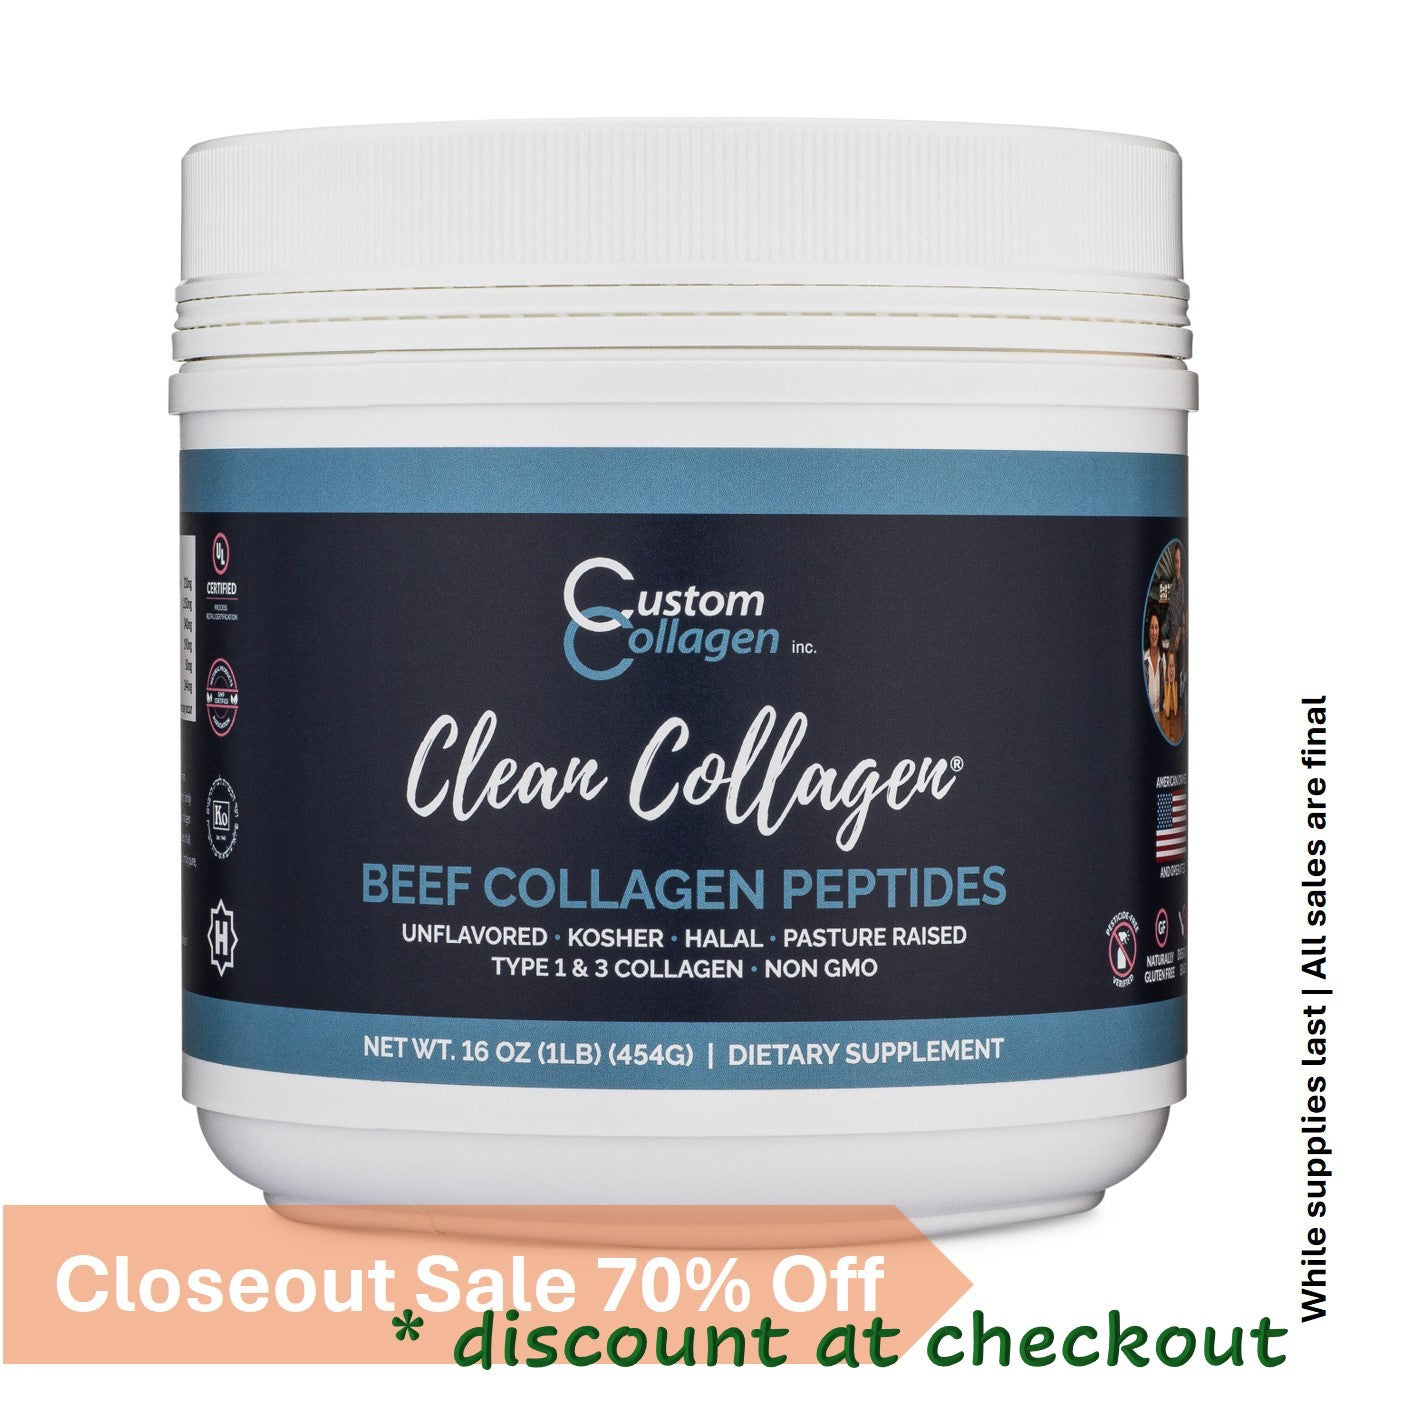 Beef Collagen Peptides